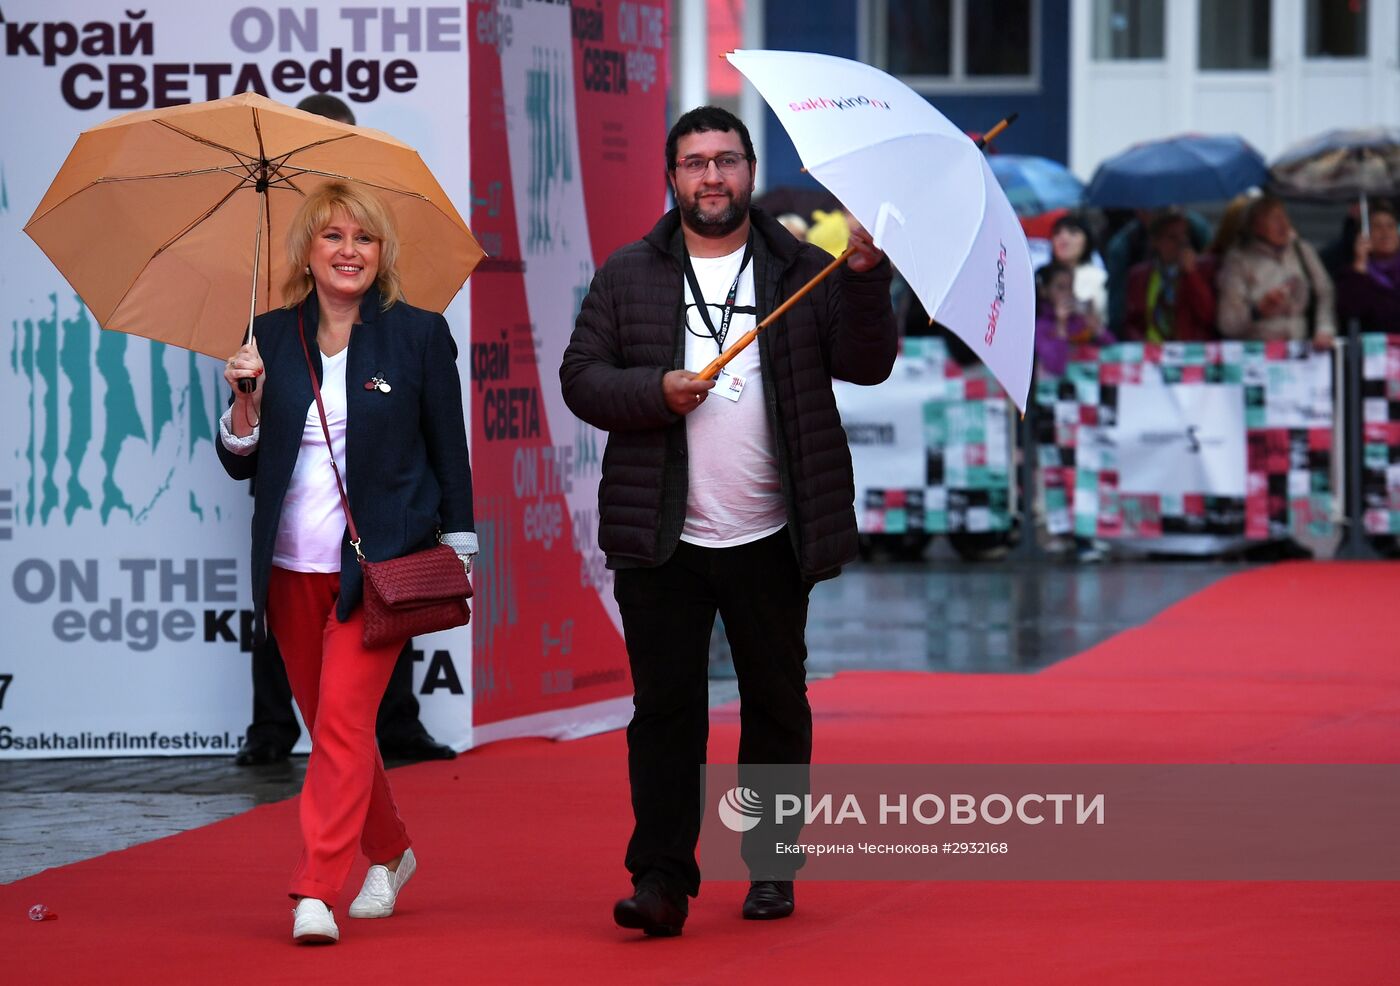 VI Сахалинский международный кинофестиваль "Край света". День первый